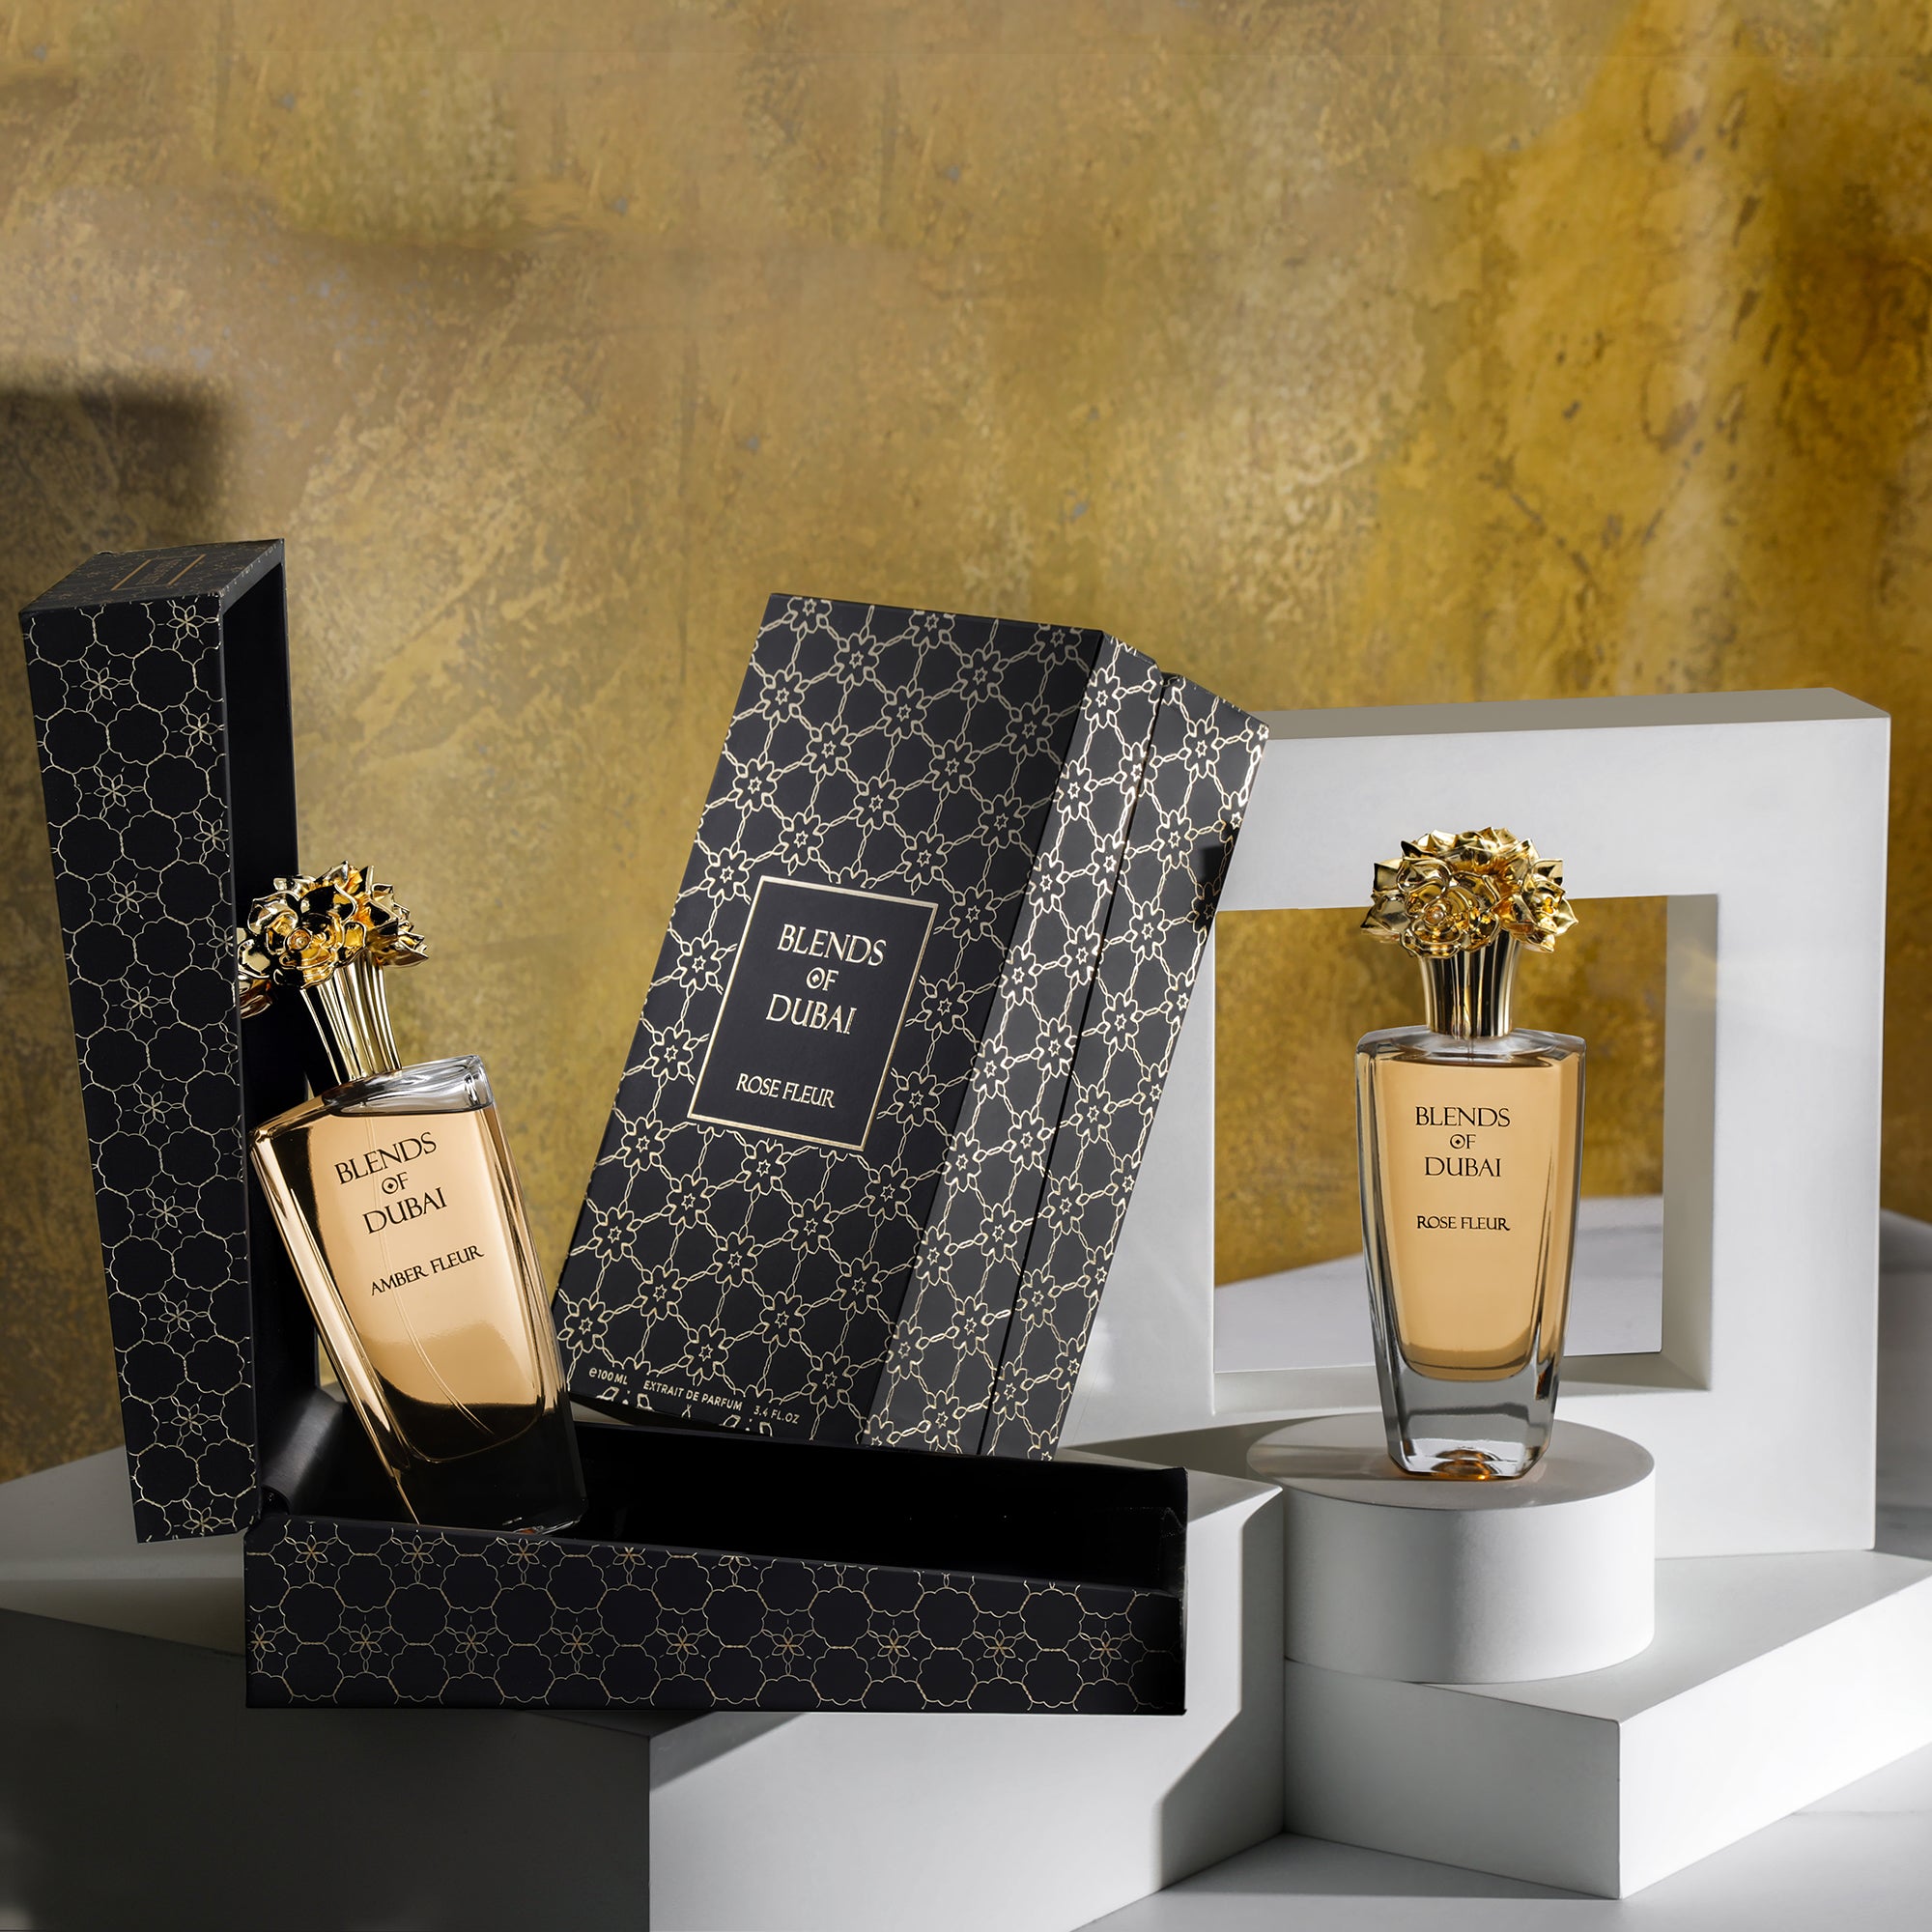 chanel fragrance sampler set